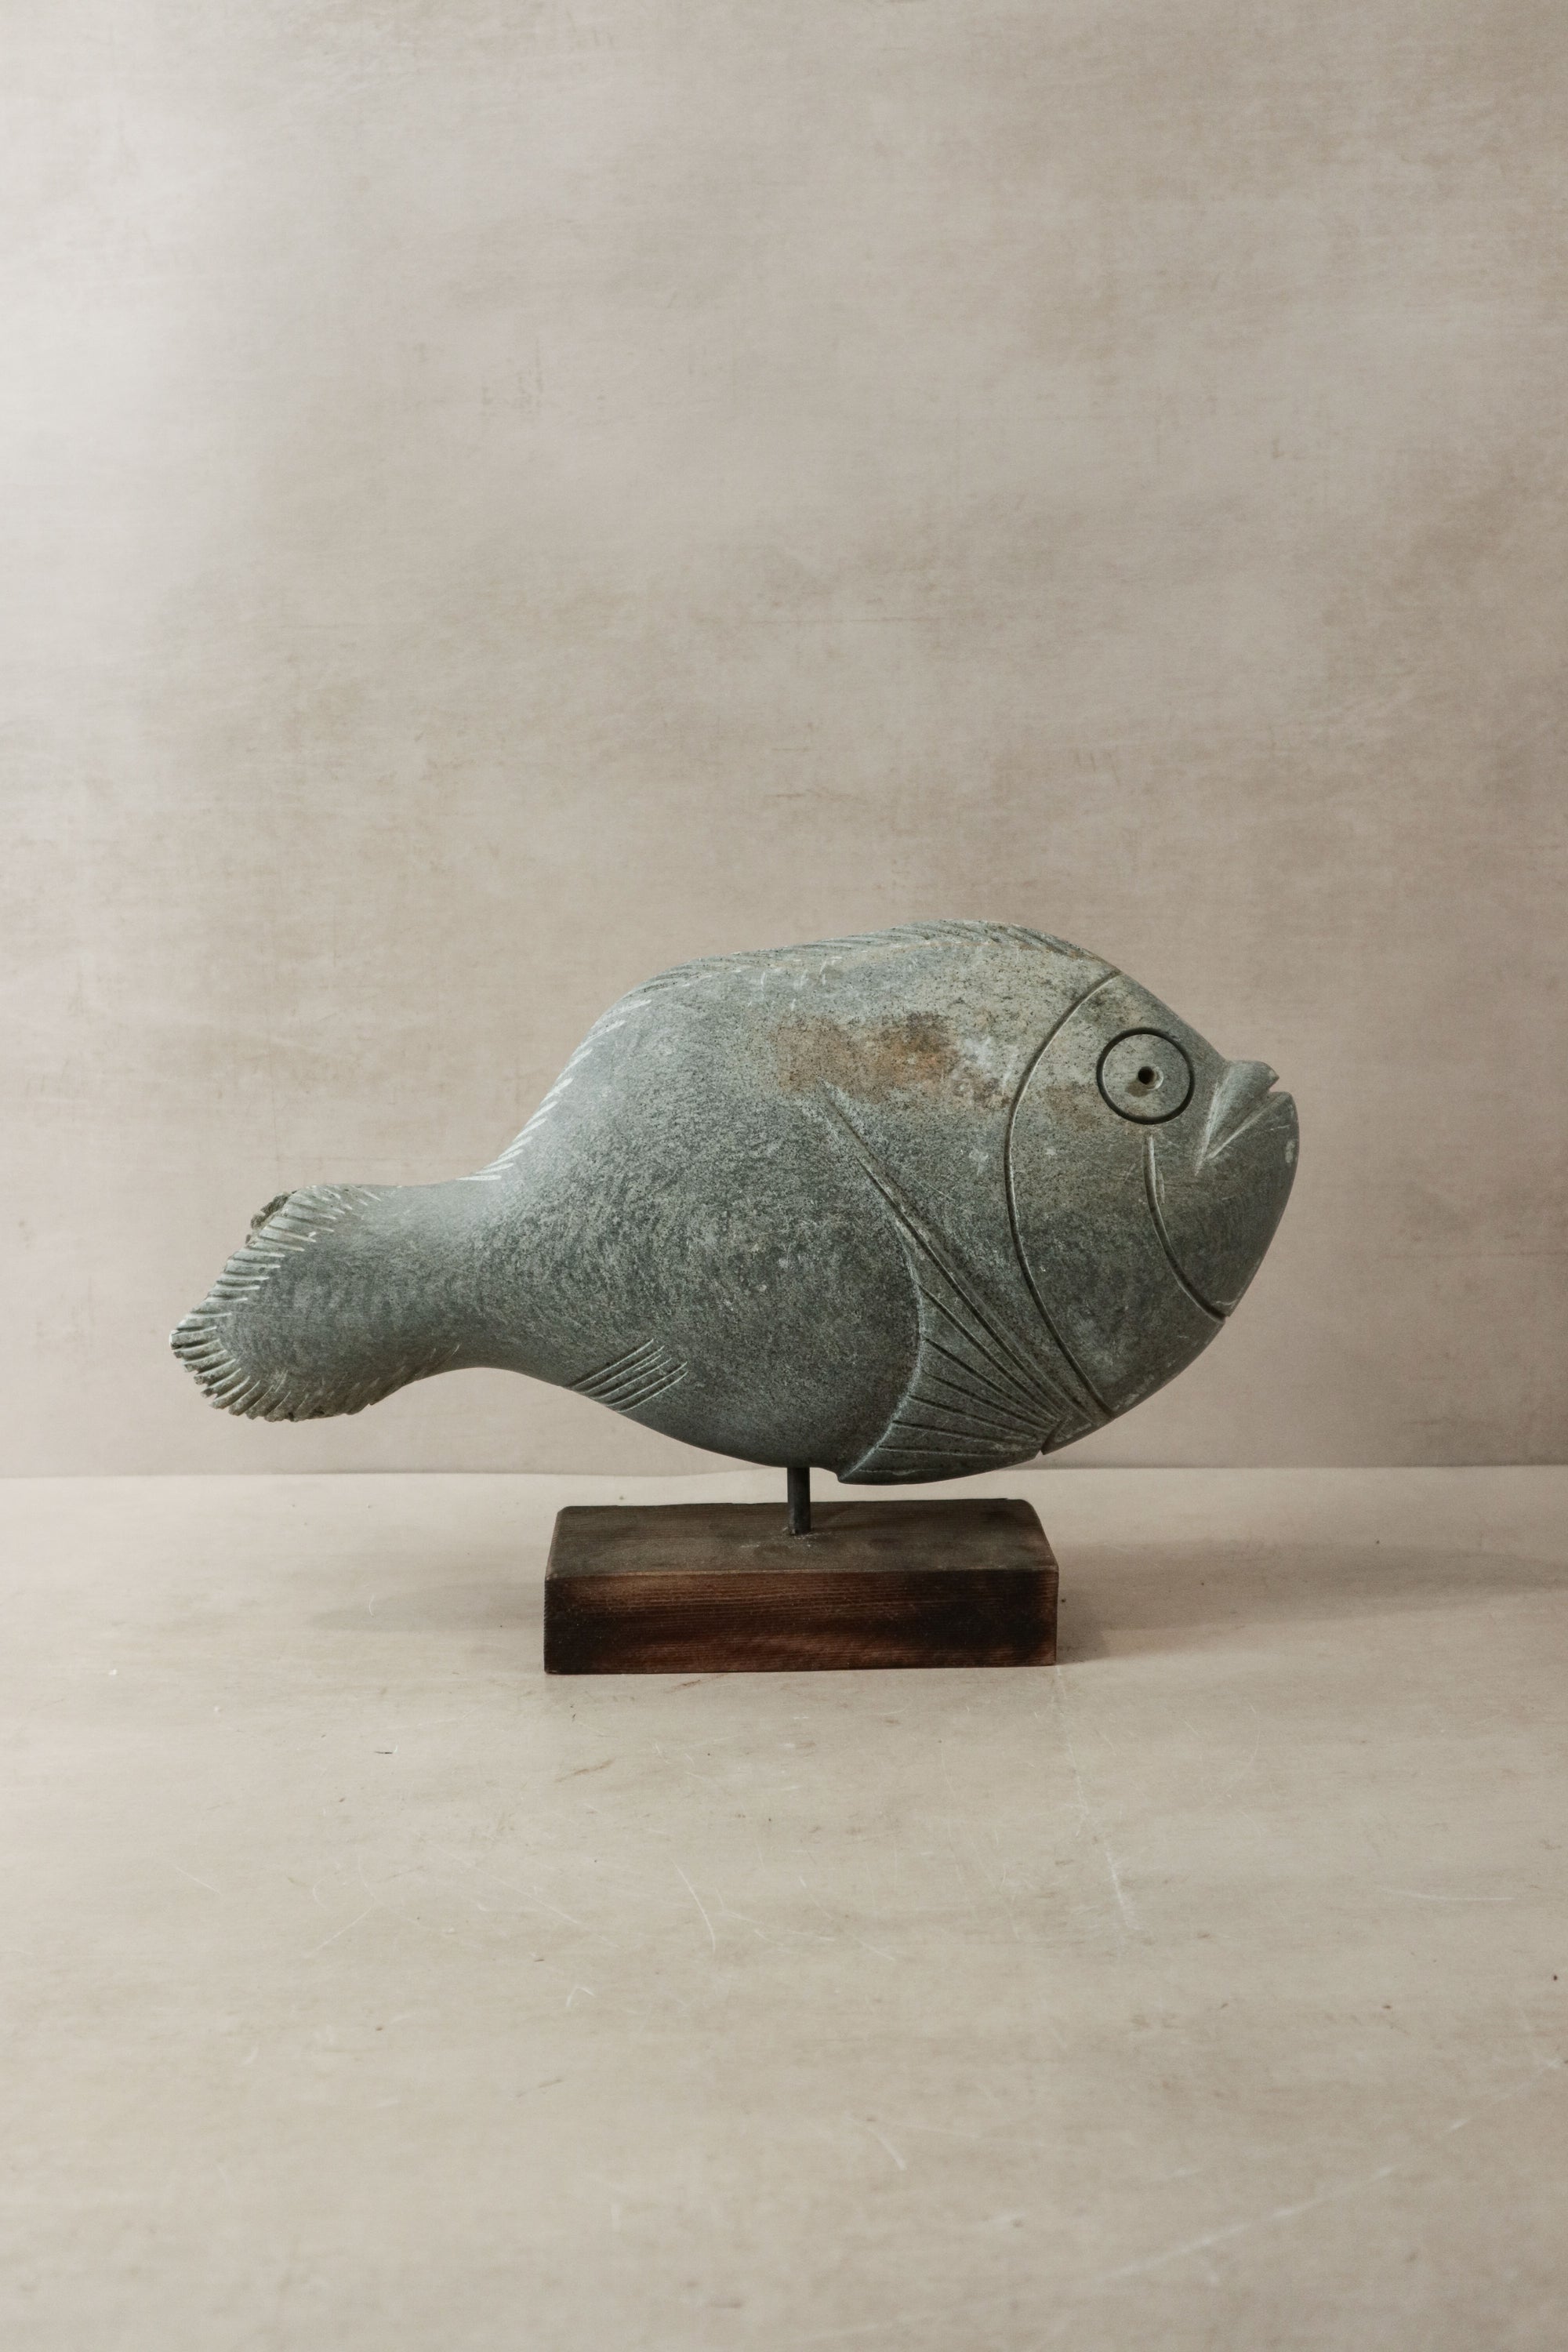 Stone Fish Sculpture - Zimbabwe - 35.3